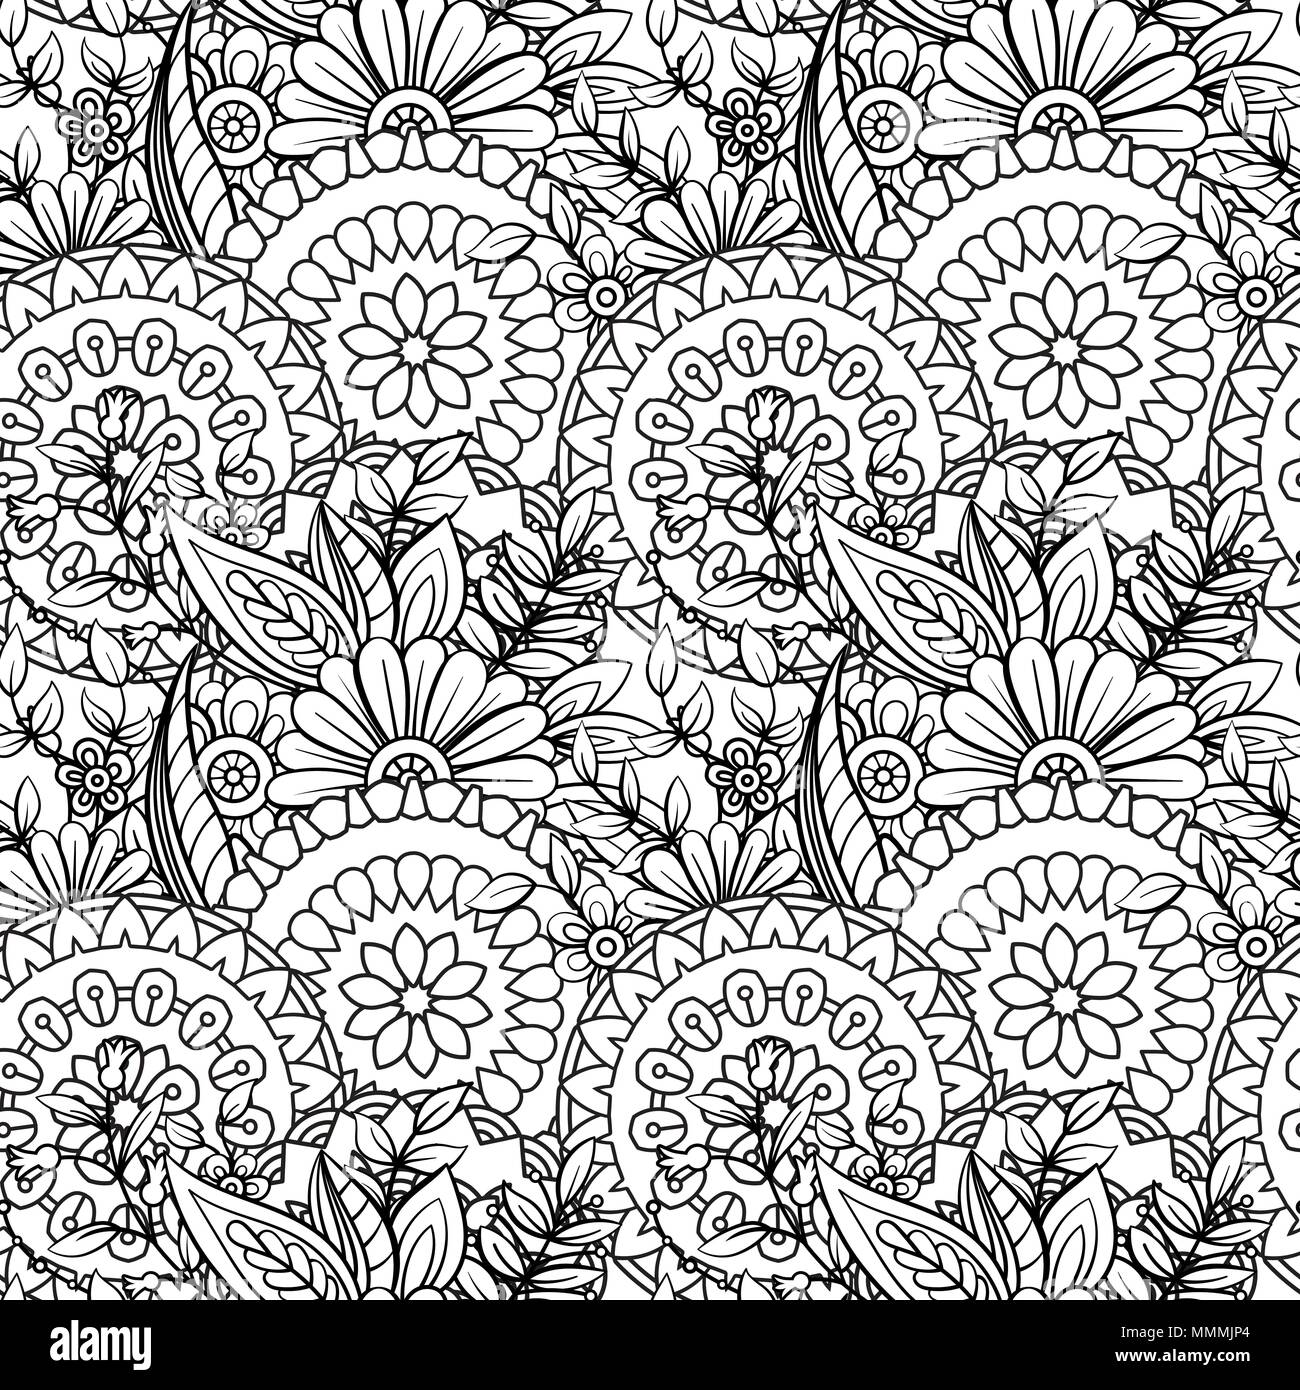 Florale nahtlose Muster in Schwarz und Weiß. Nach Malbuch Seite mit Blumen und Mandalas. Hand Vector Illustration gezeichnet. Doodles Hintergrund Stock Vektor